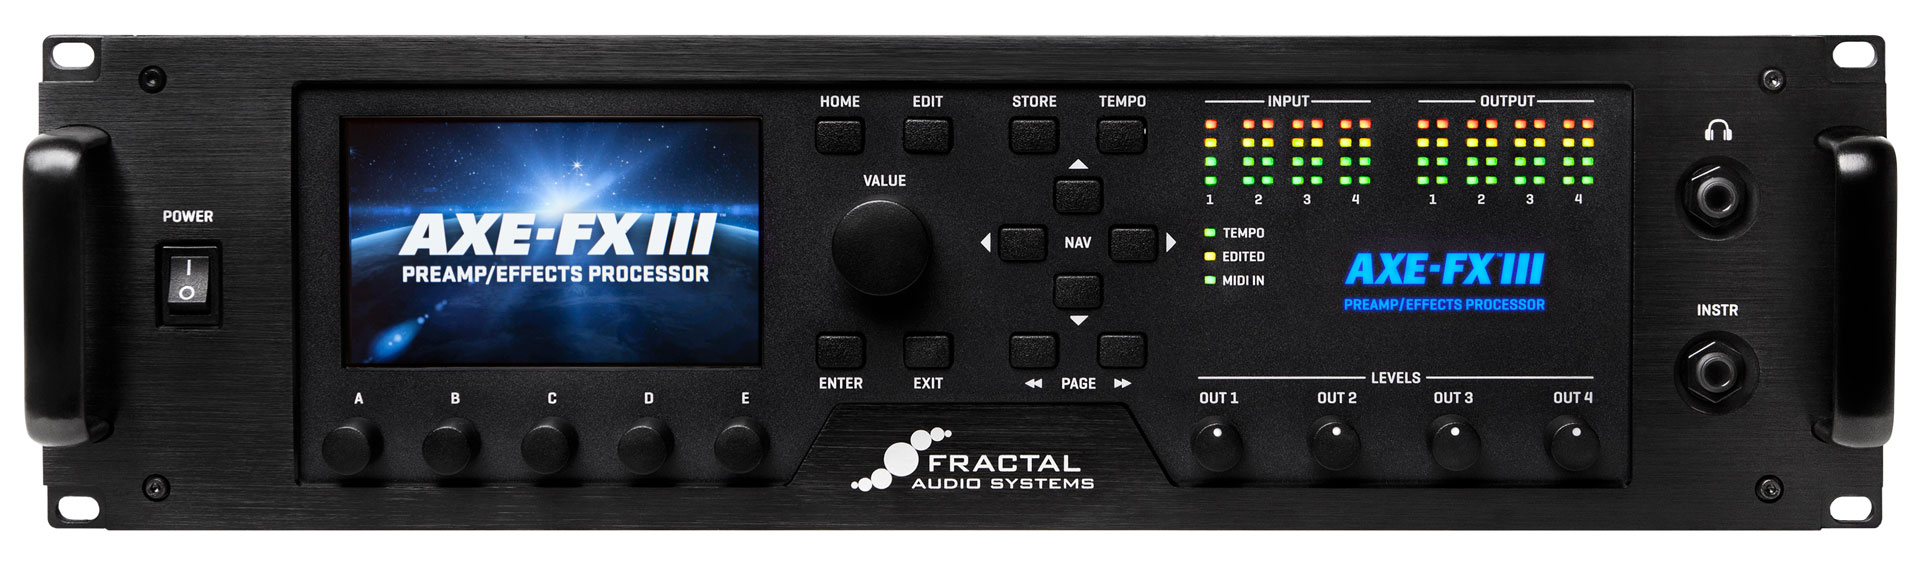 Axe-Fx III – Fractal Audio Systems